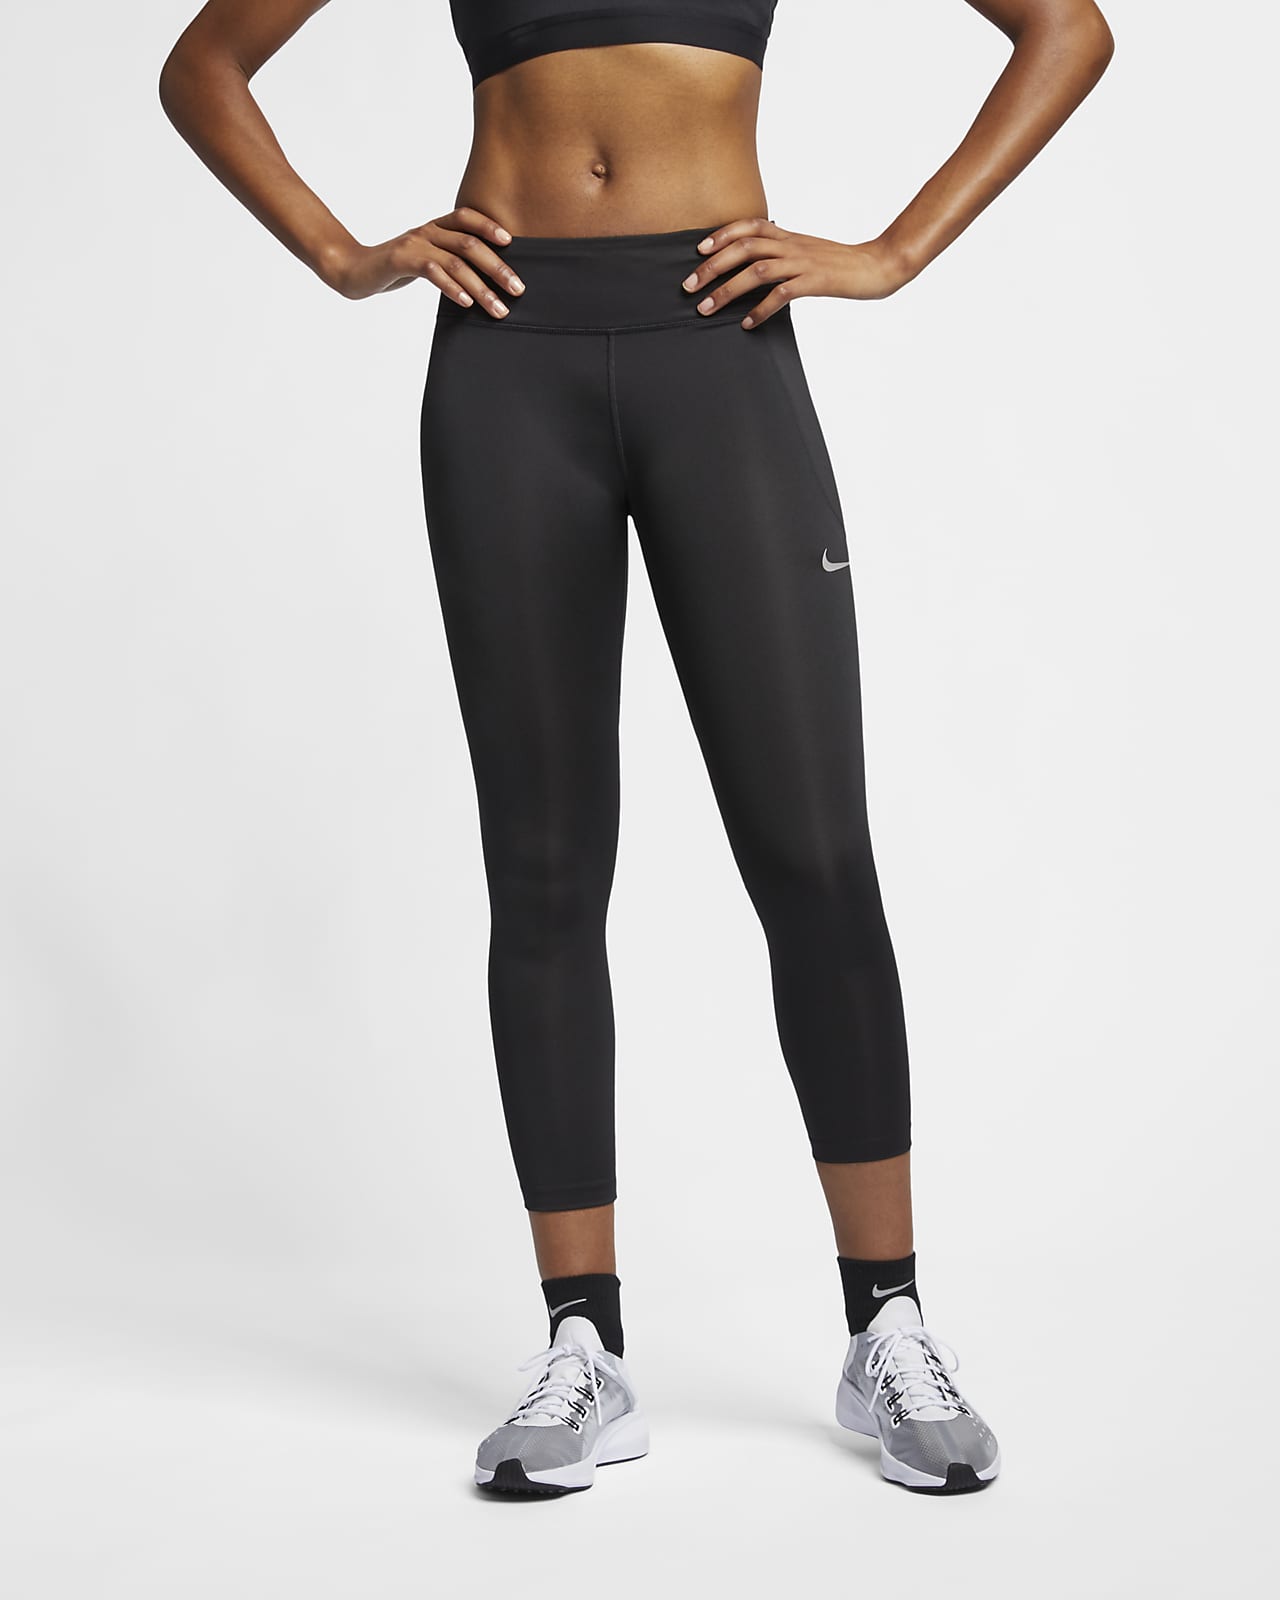 Nike Women's 3/4 Running Crops. Nike JP